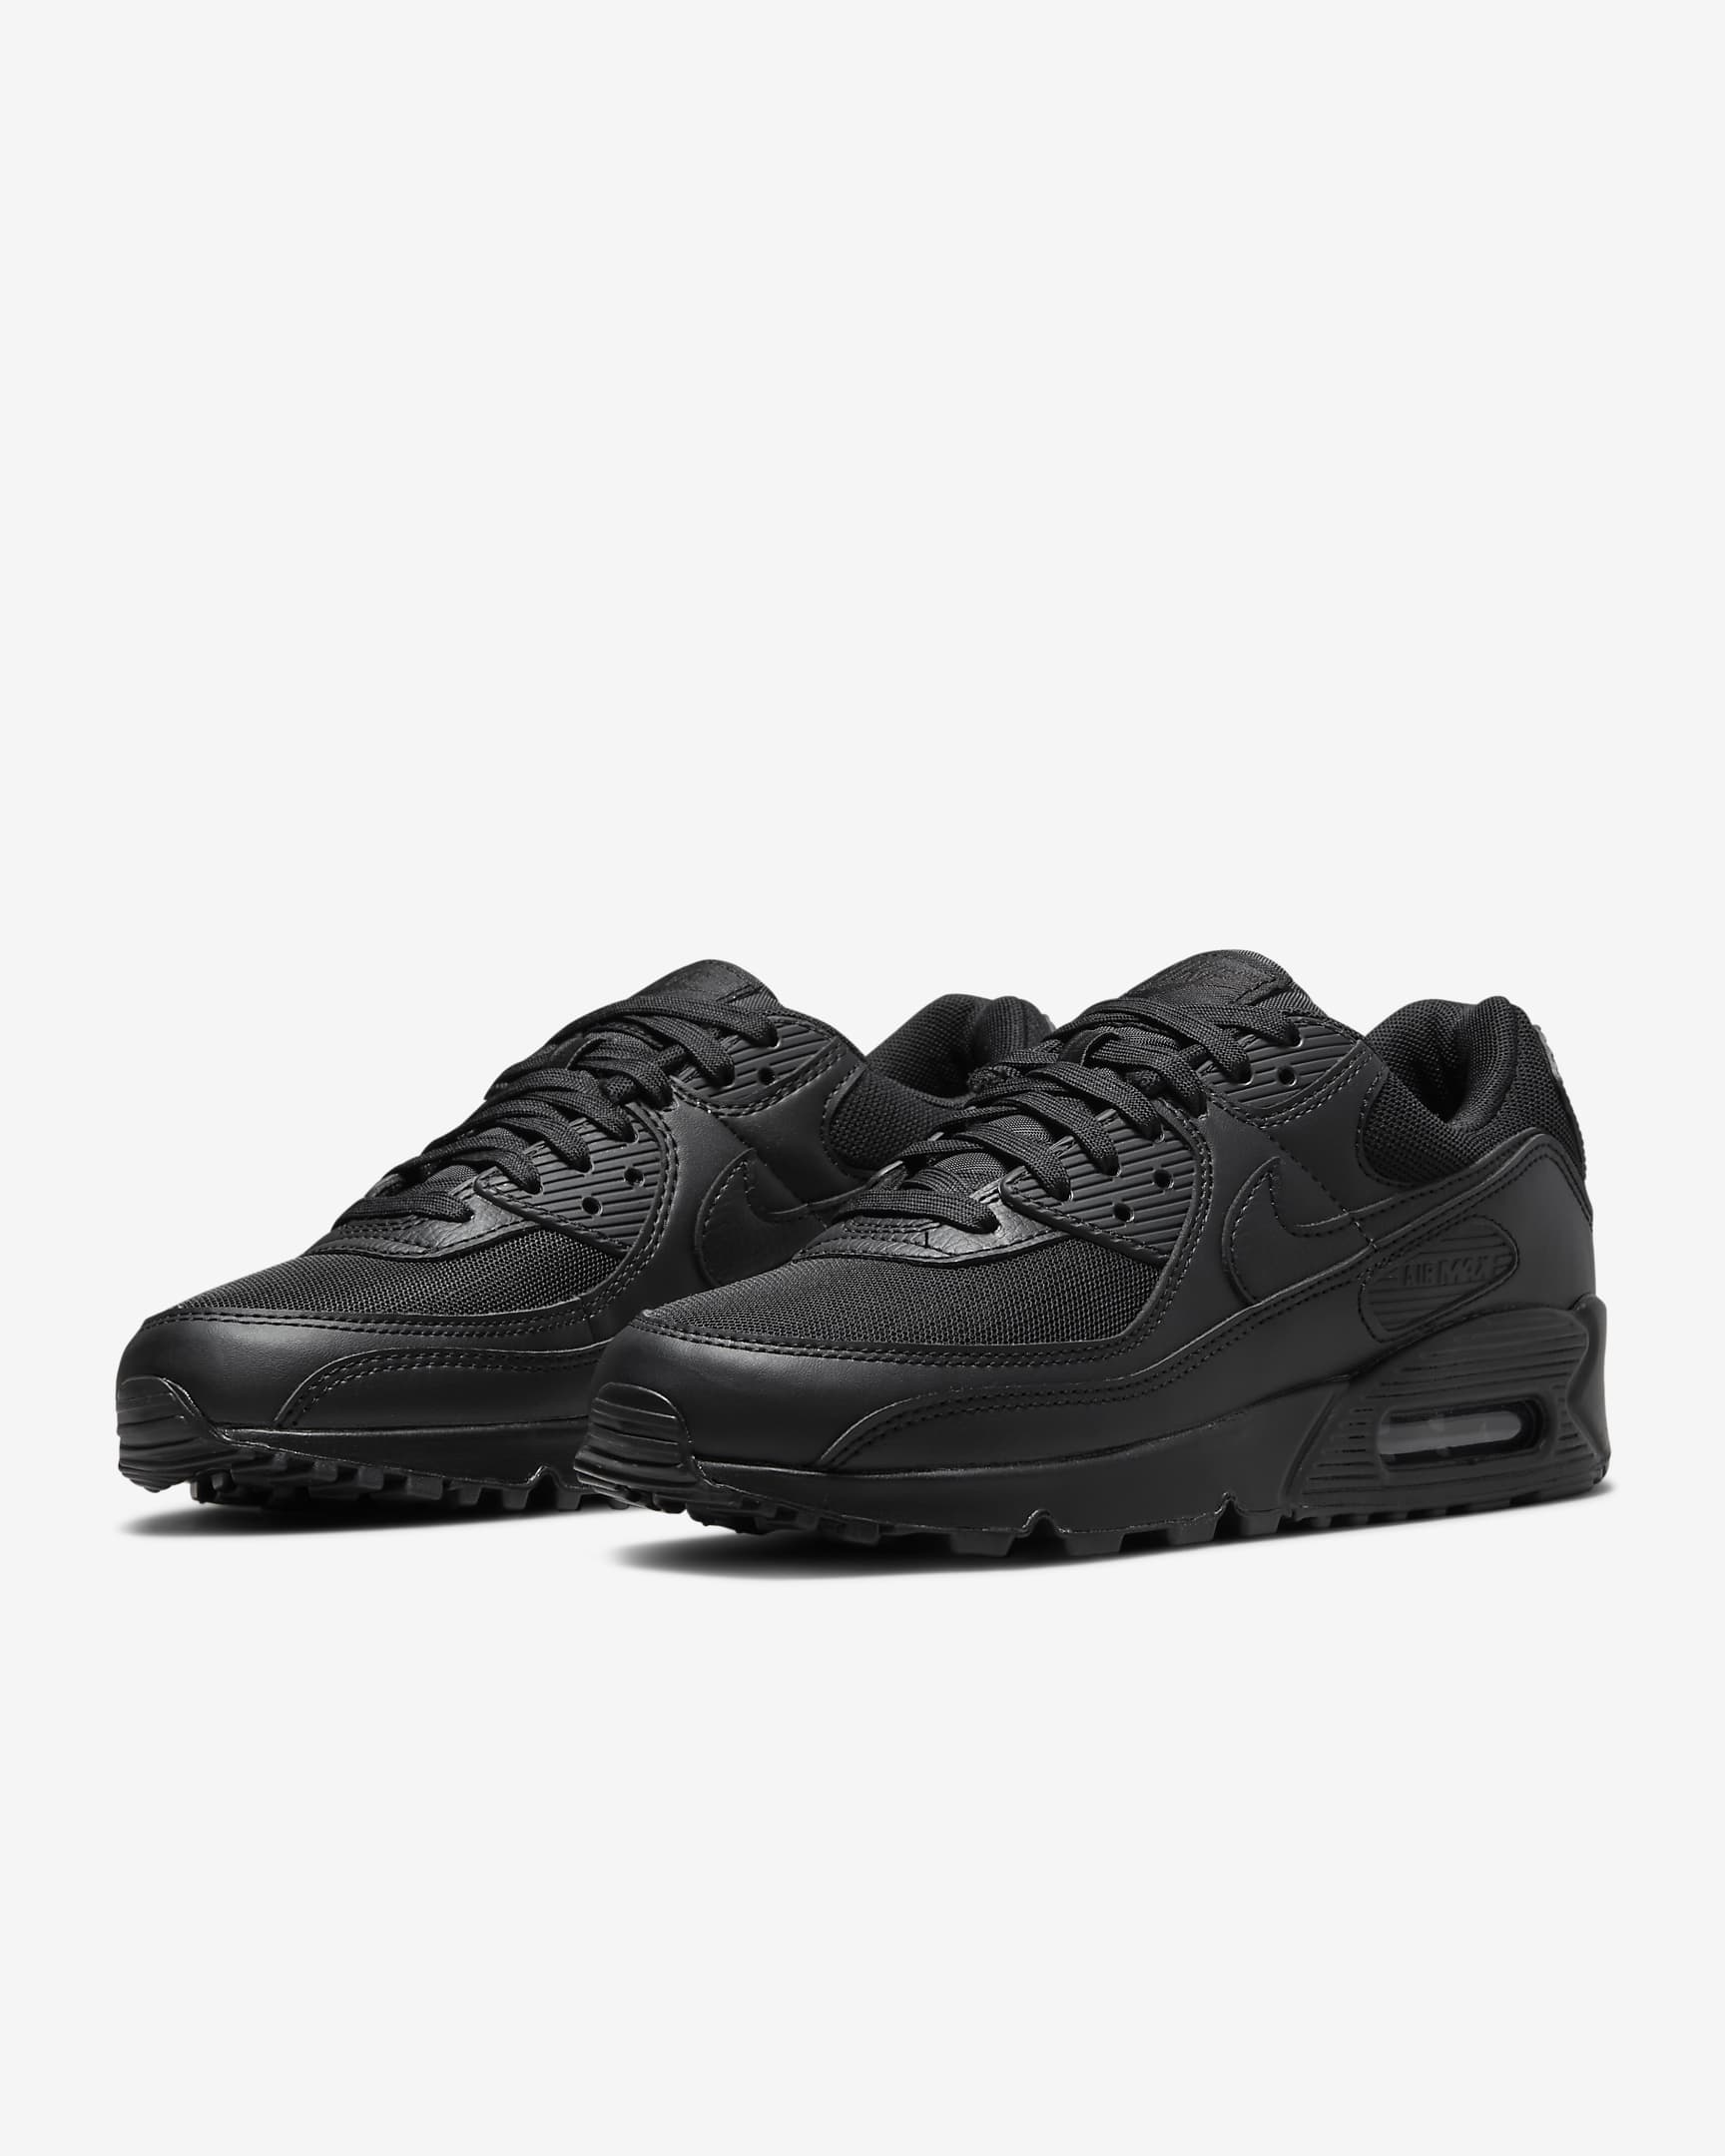 Nike Air Max 90-sko til kvinder - sort/sort/sort/sort